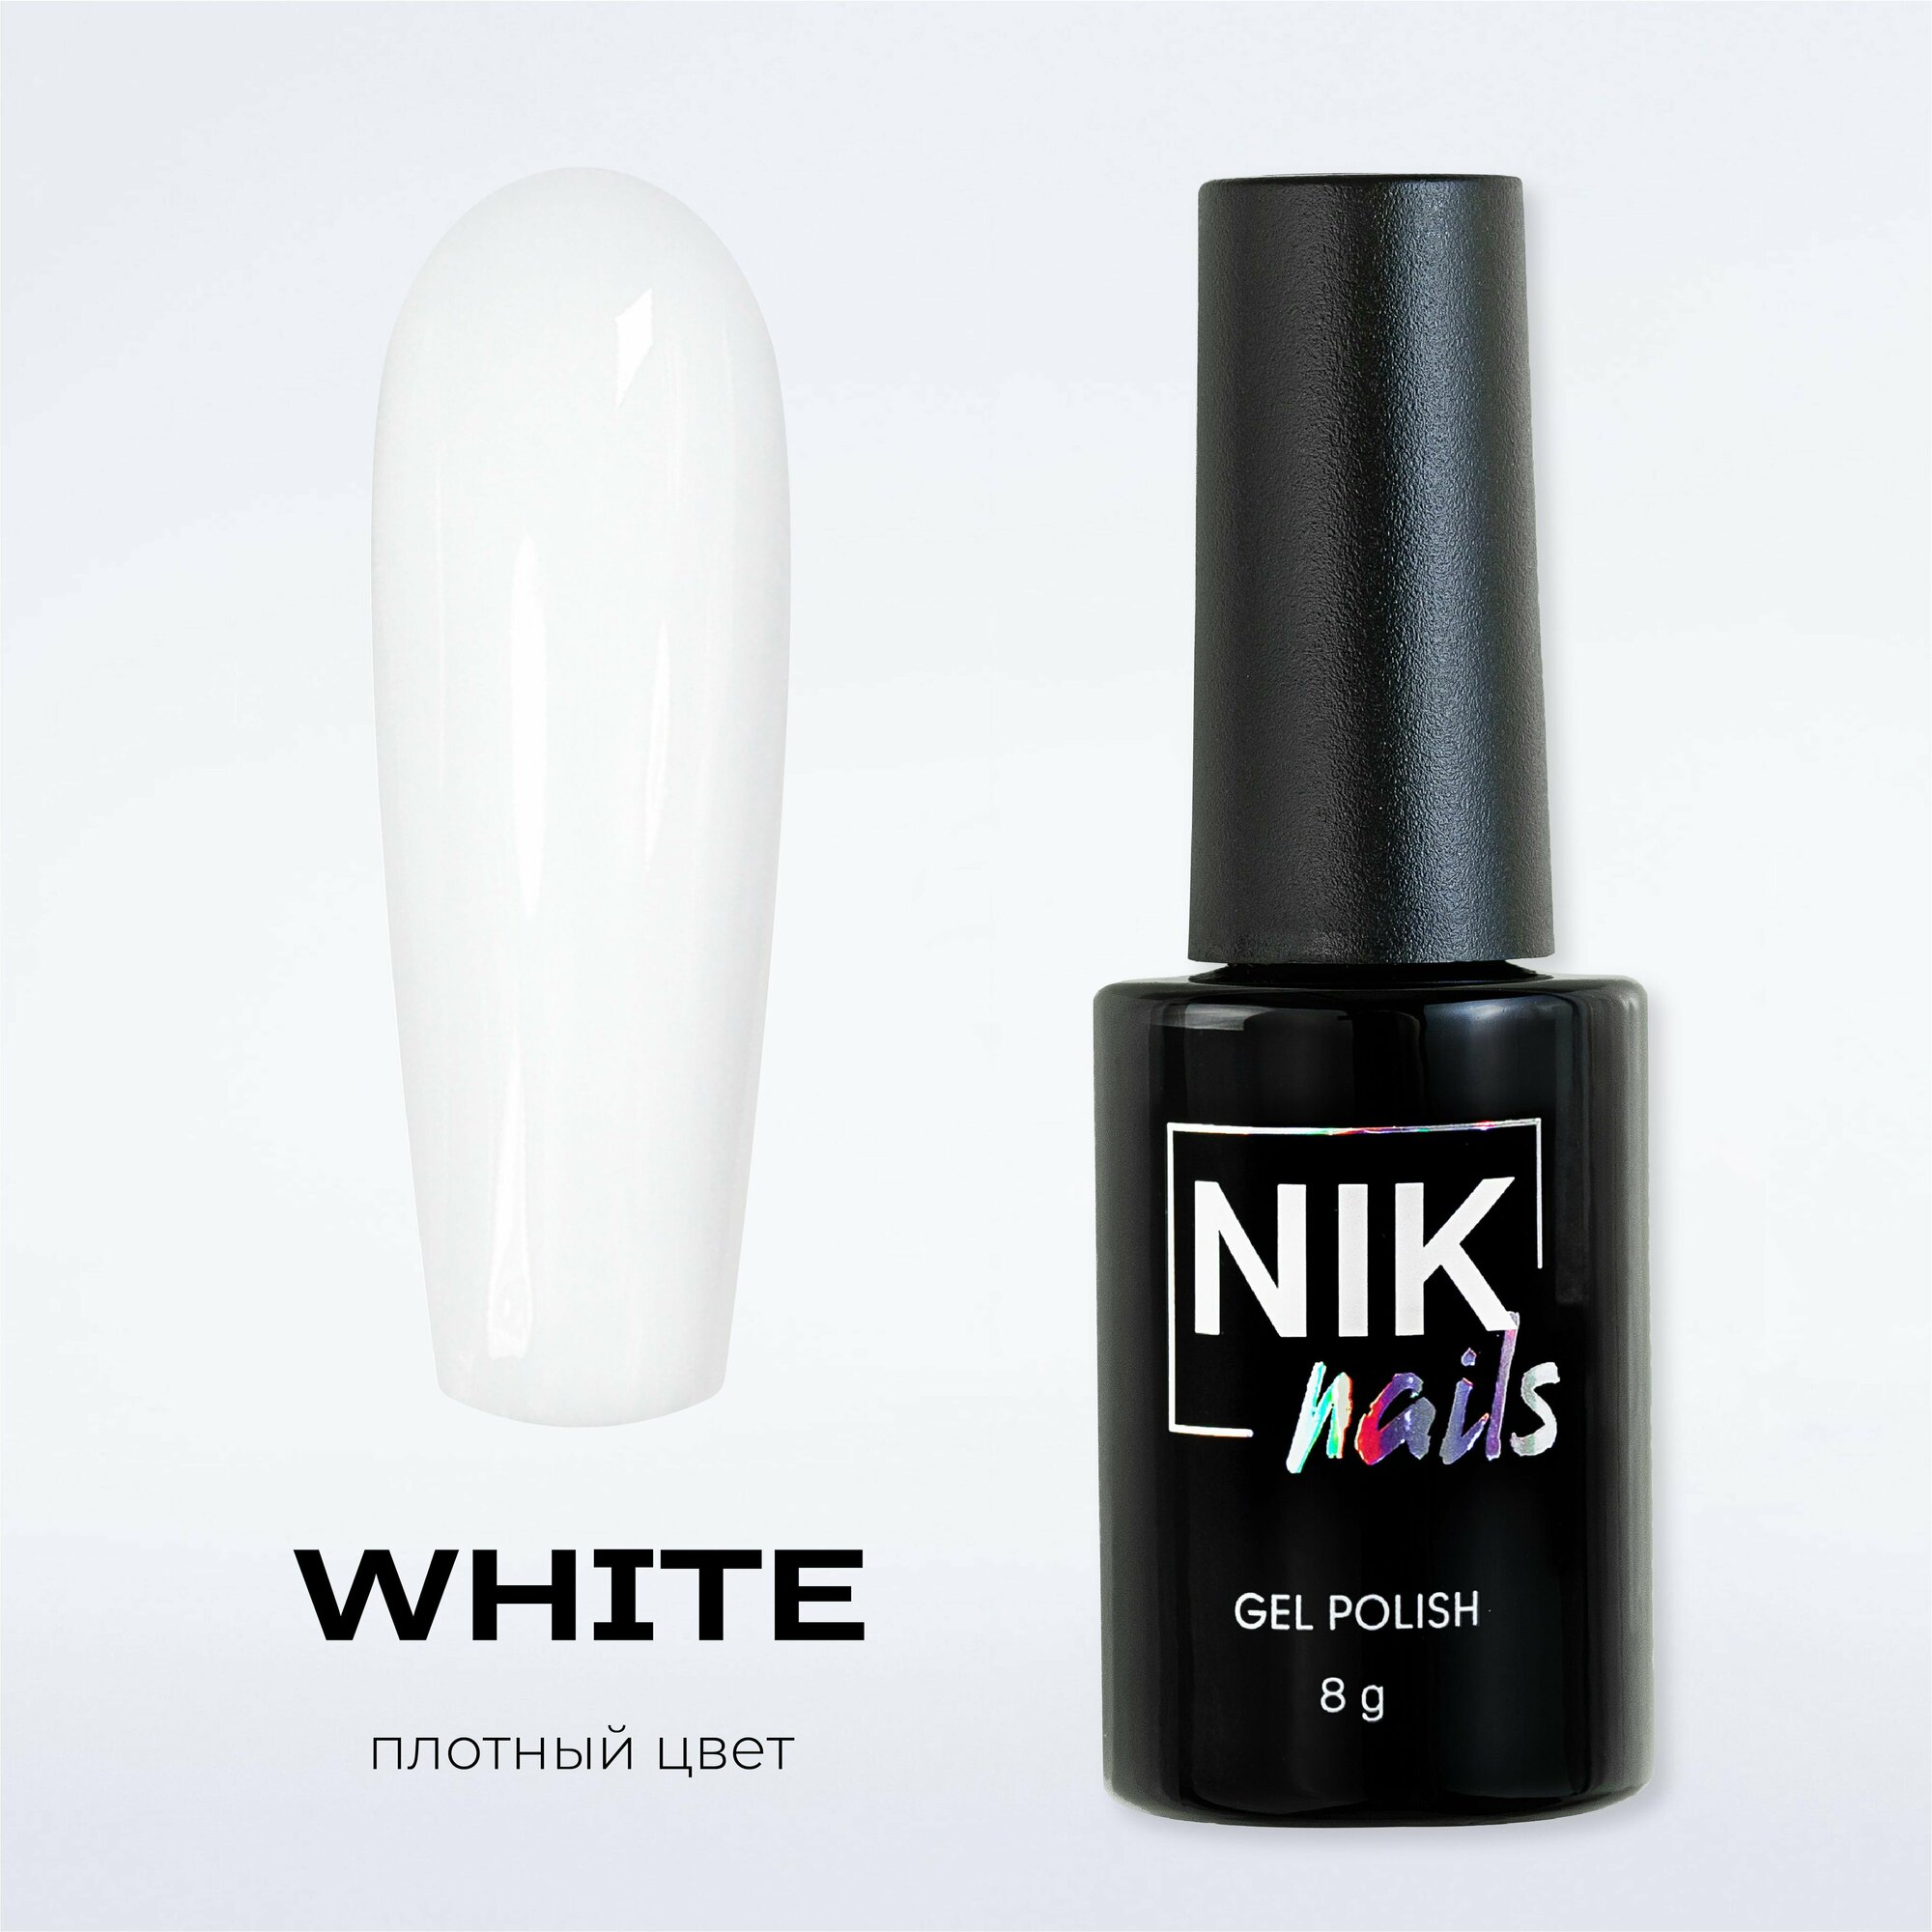 NIK nails Гель-лак для ногтей белый глянцевый white 8g.